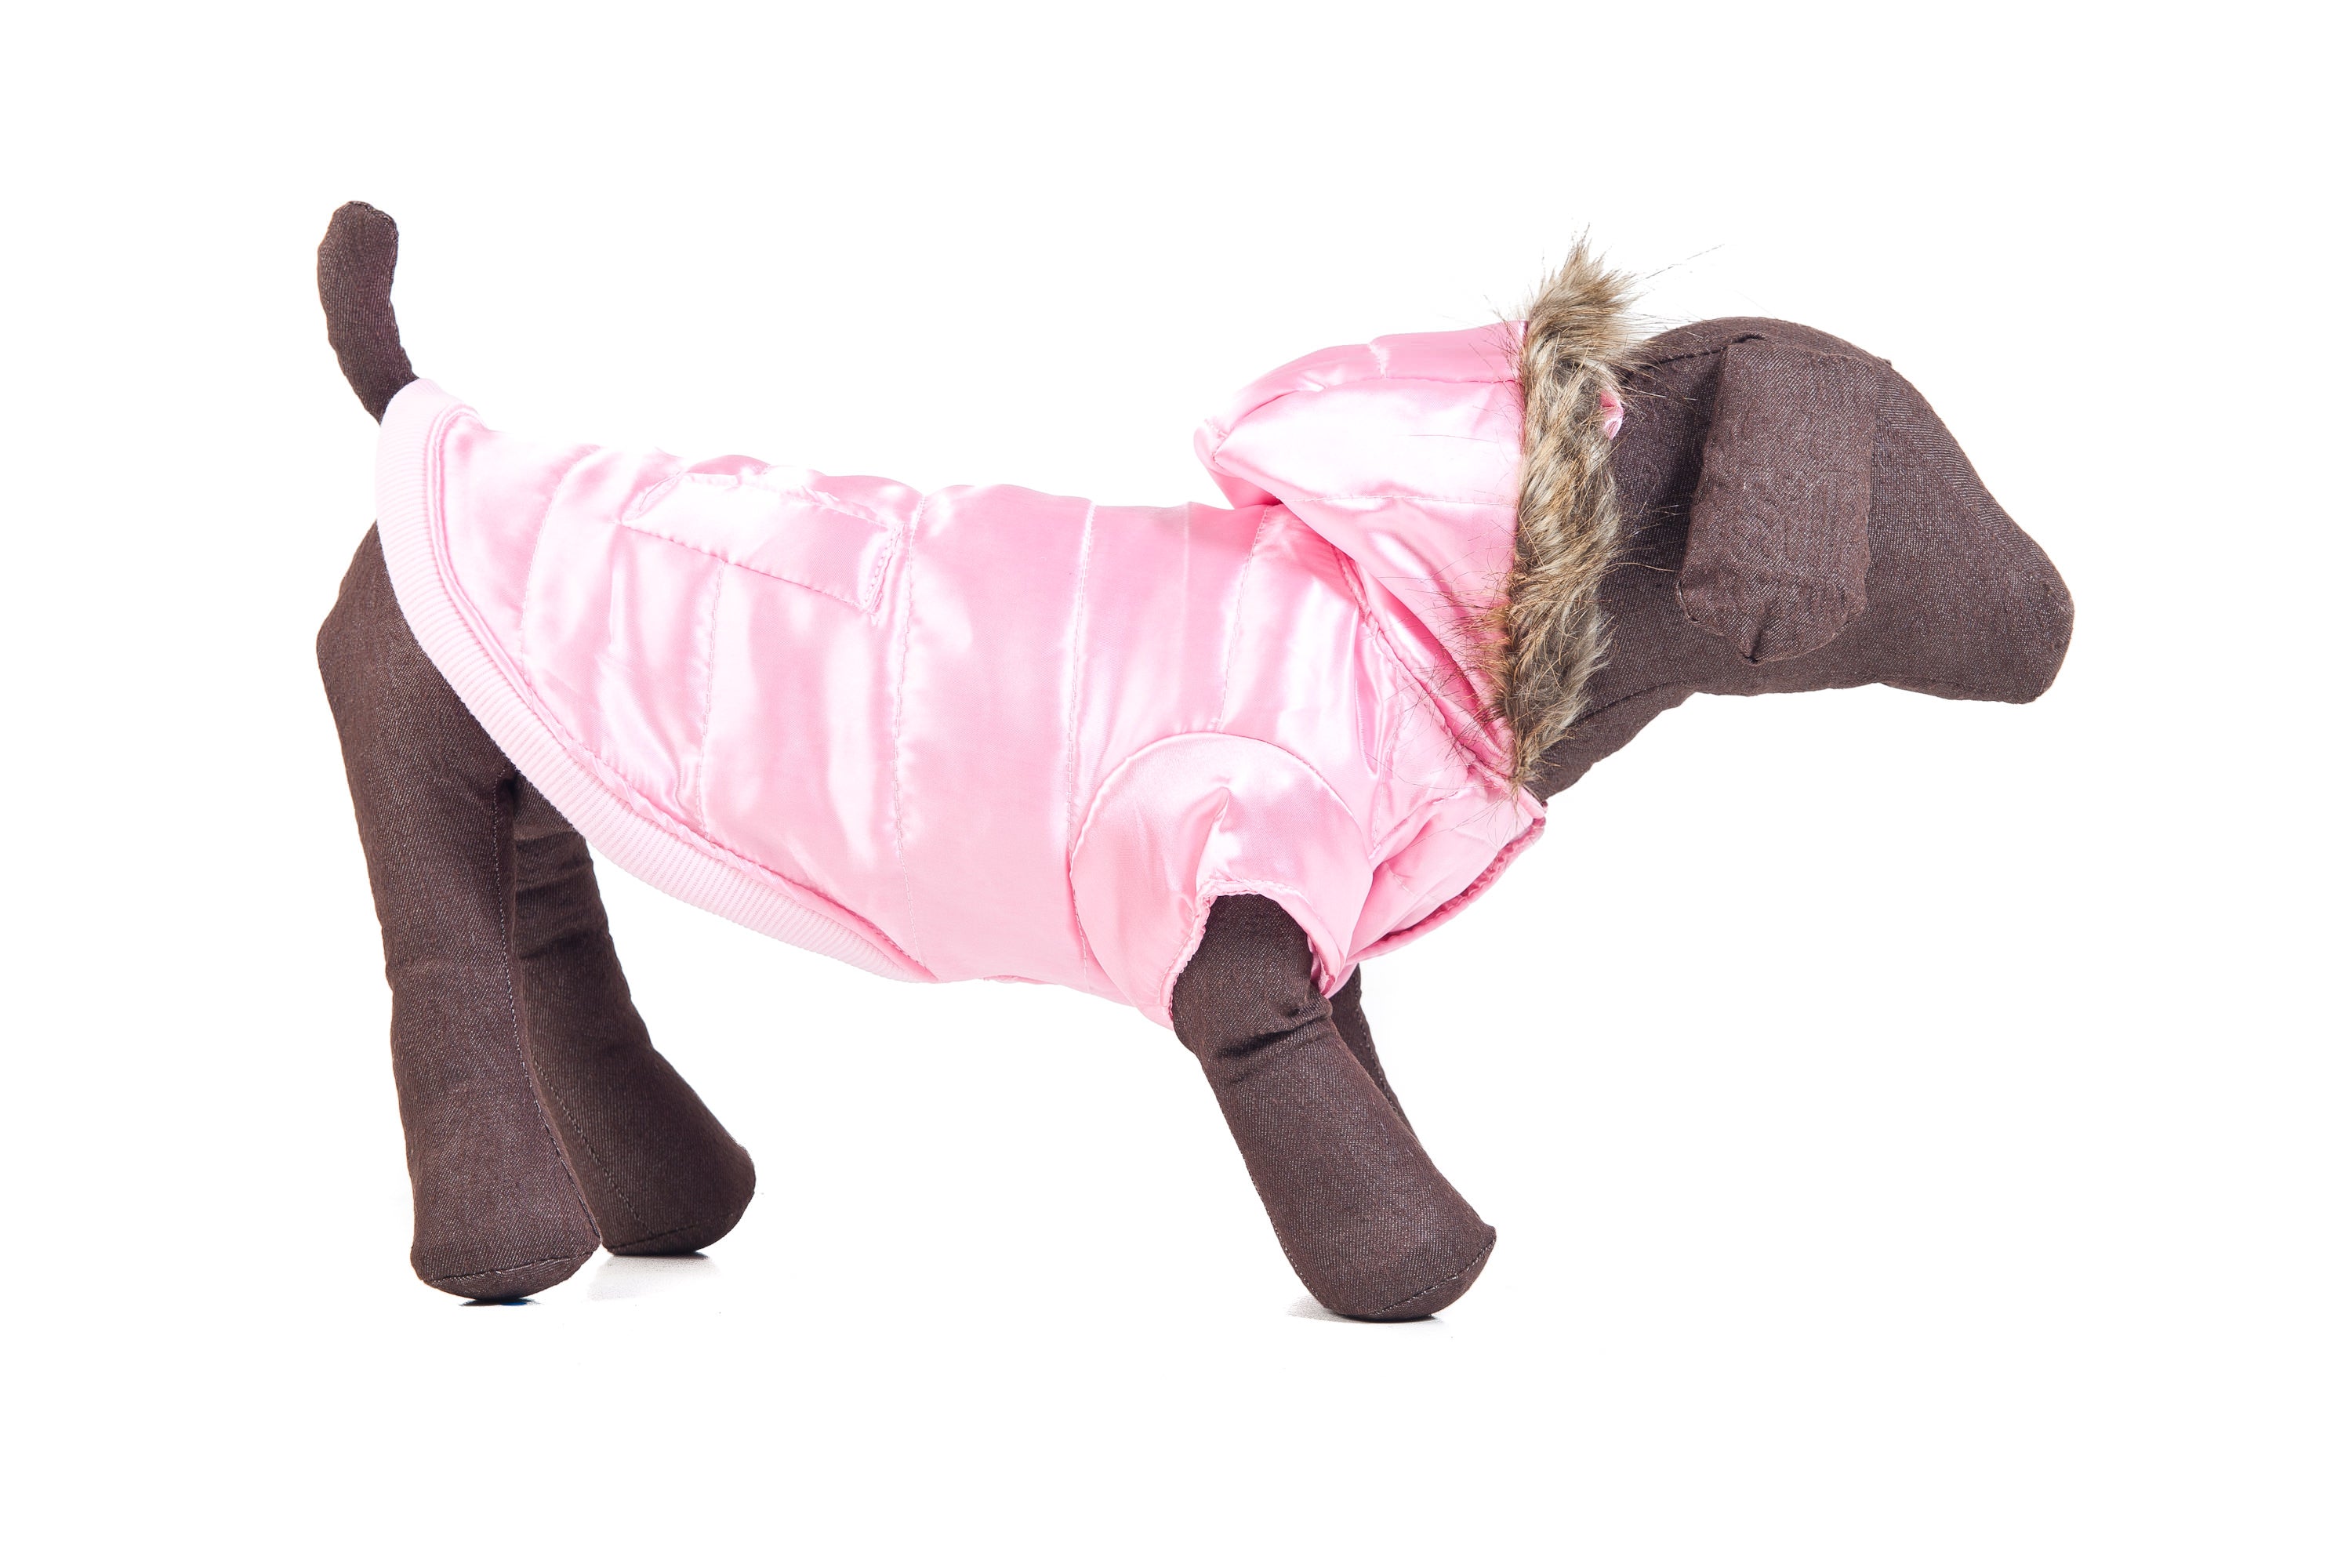 Pink Parka Dog Coat